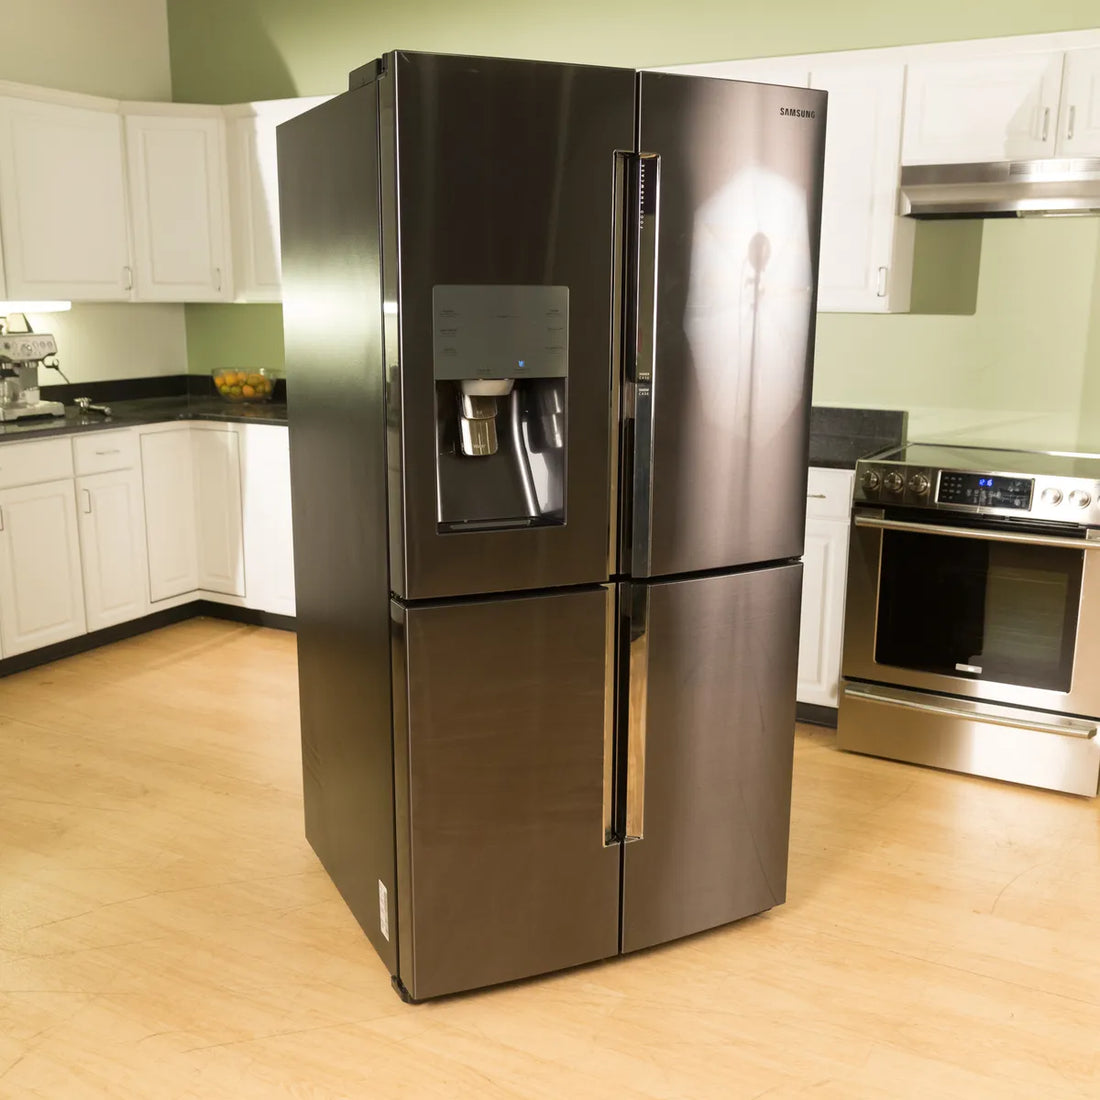 Common Problems With Refrigirators